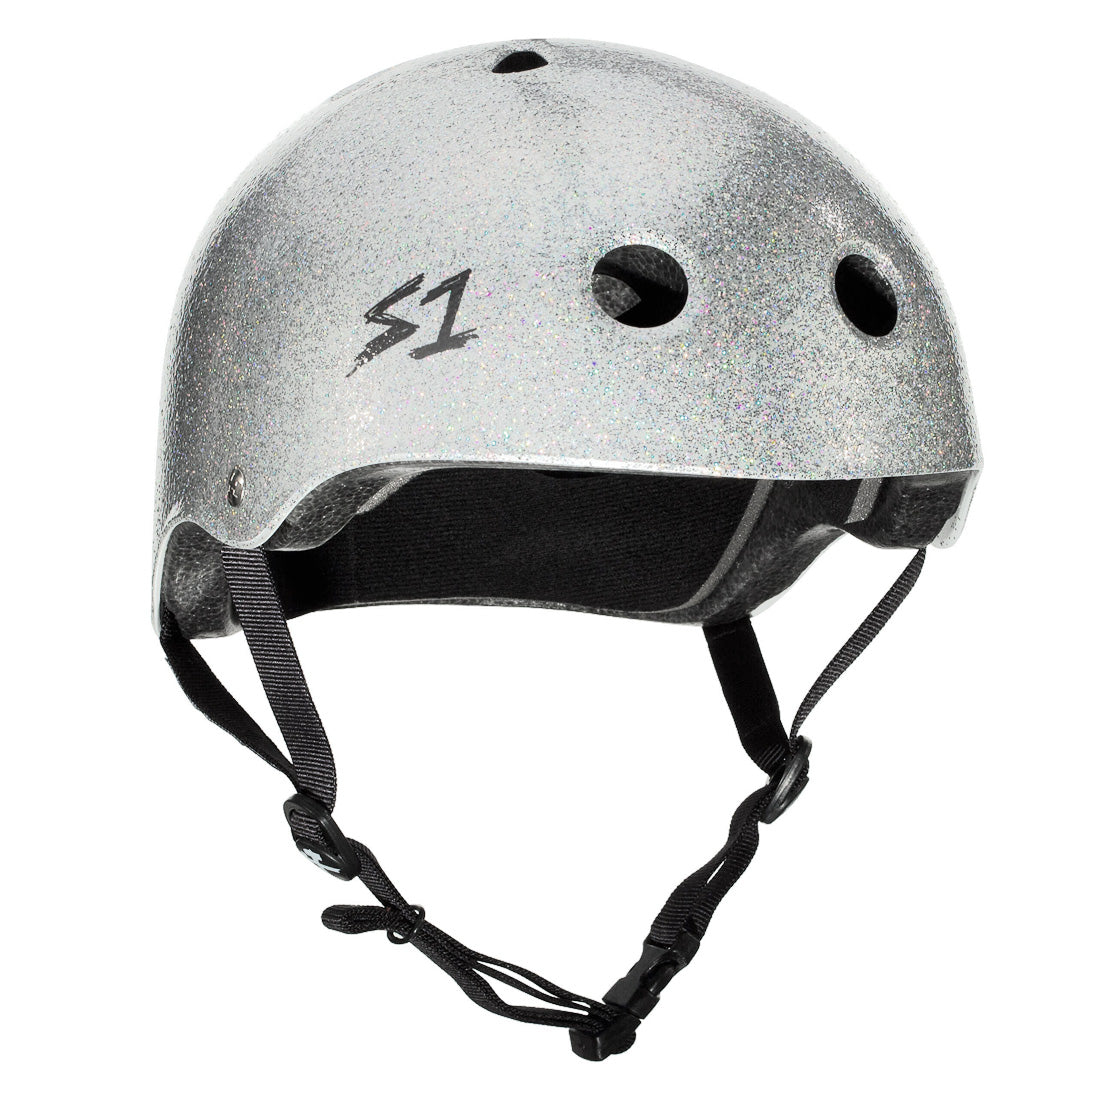 S-One Lifer Helmet - Silver Glitter Helmets